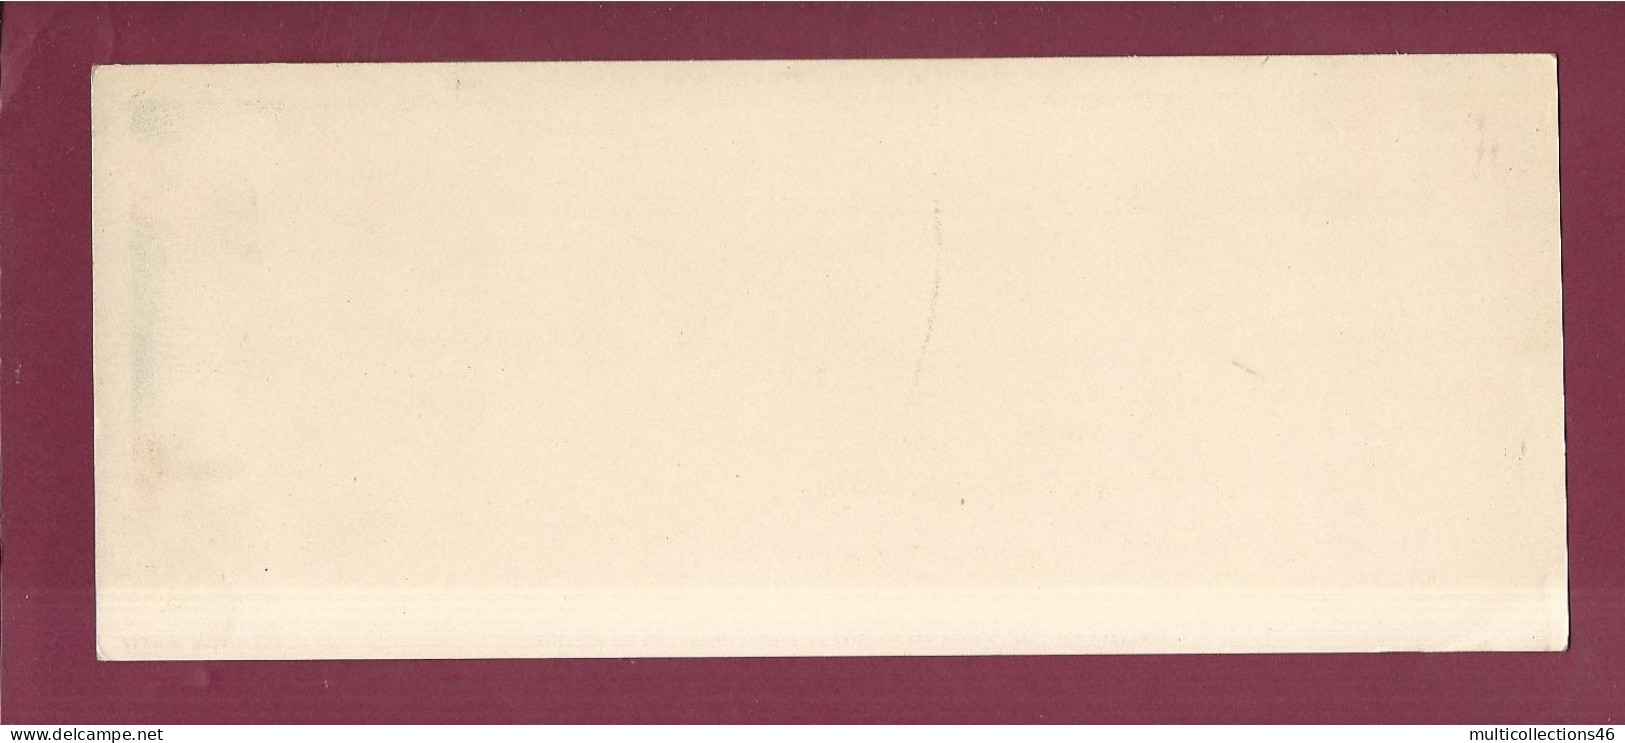 141223 - CARTE EDITION CHOCOLATERIE CONFISERIE CANTALOUP CATALA - LYON Vue Place Bellecour - B143 Album 1 - Schokolade